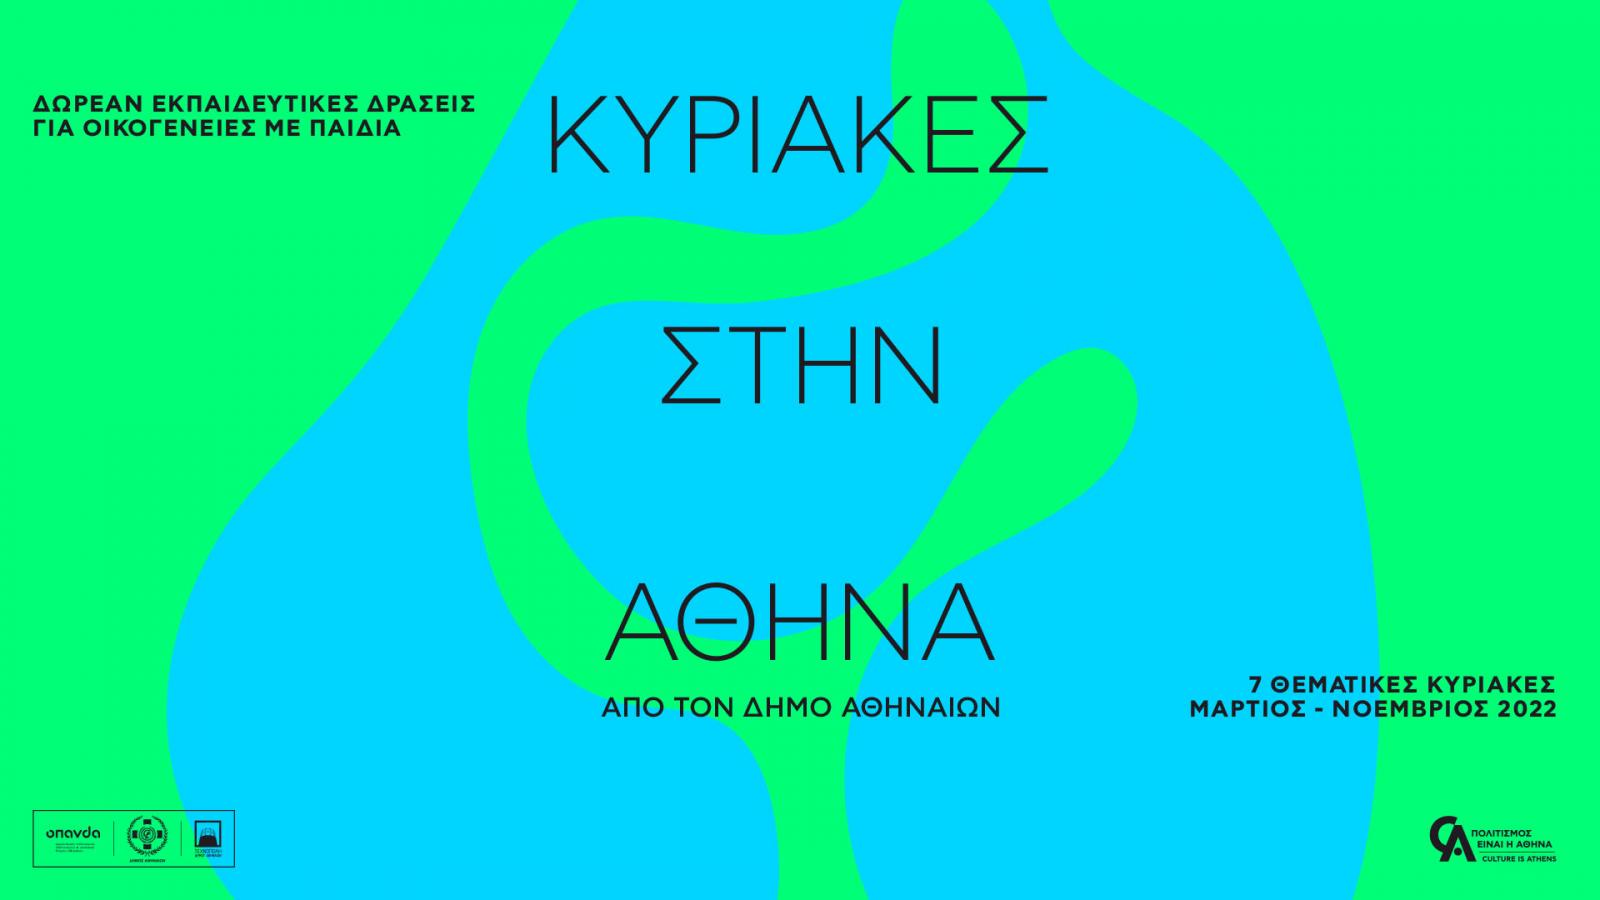 «Κυριακές στην Αθήνα» από τον Δήμο Αθηναίων